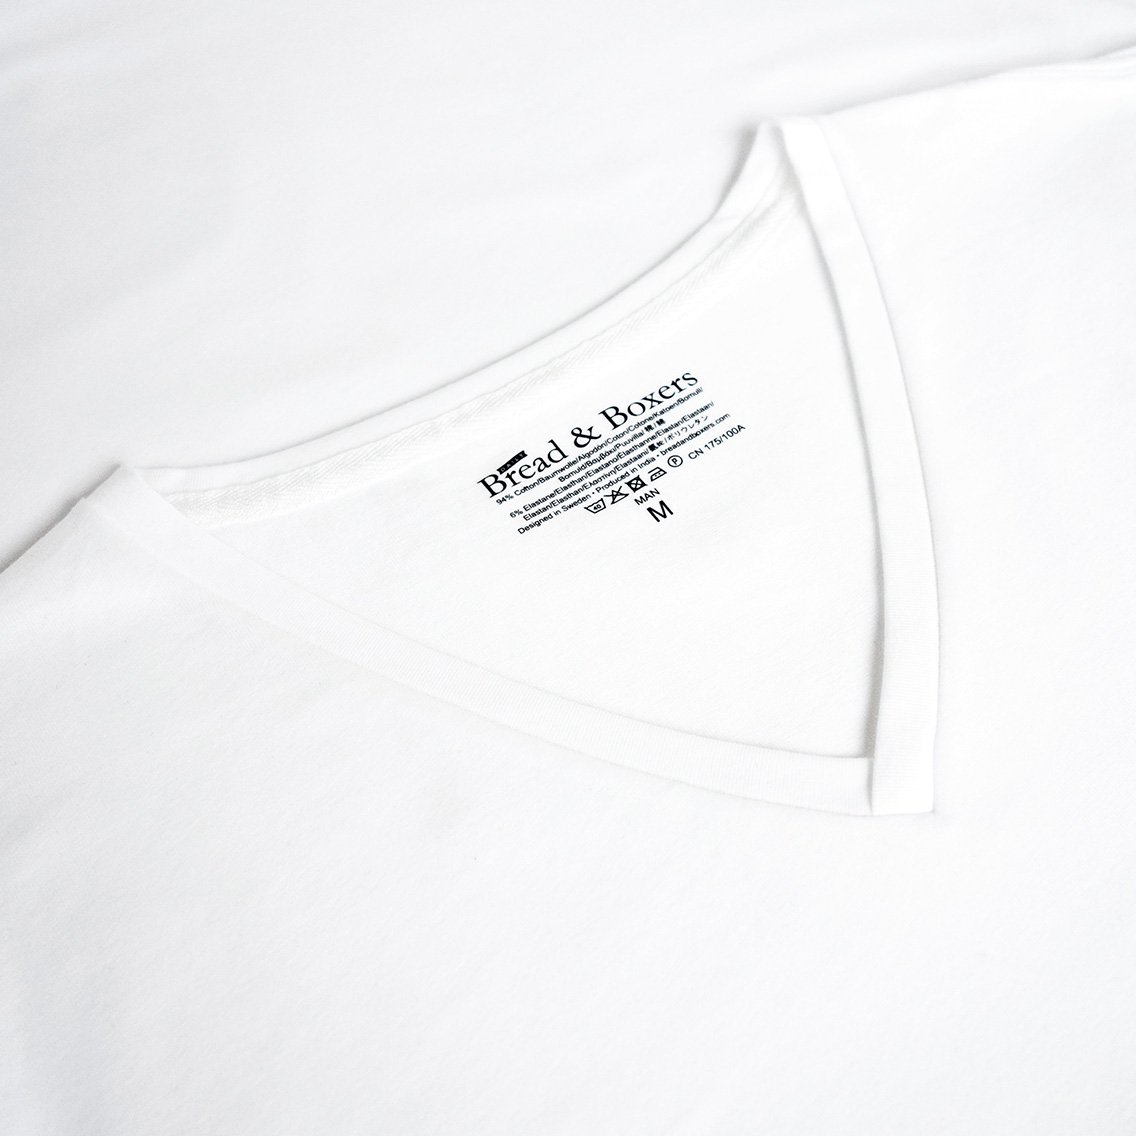 ブレッド＆ボクサーズ：ORGANIC COTTON V-NECK Tシャツ (ホワイト)